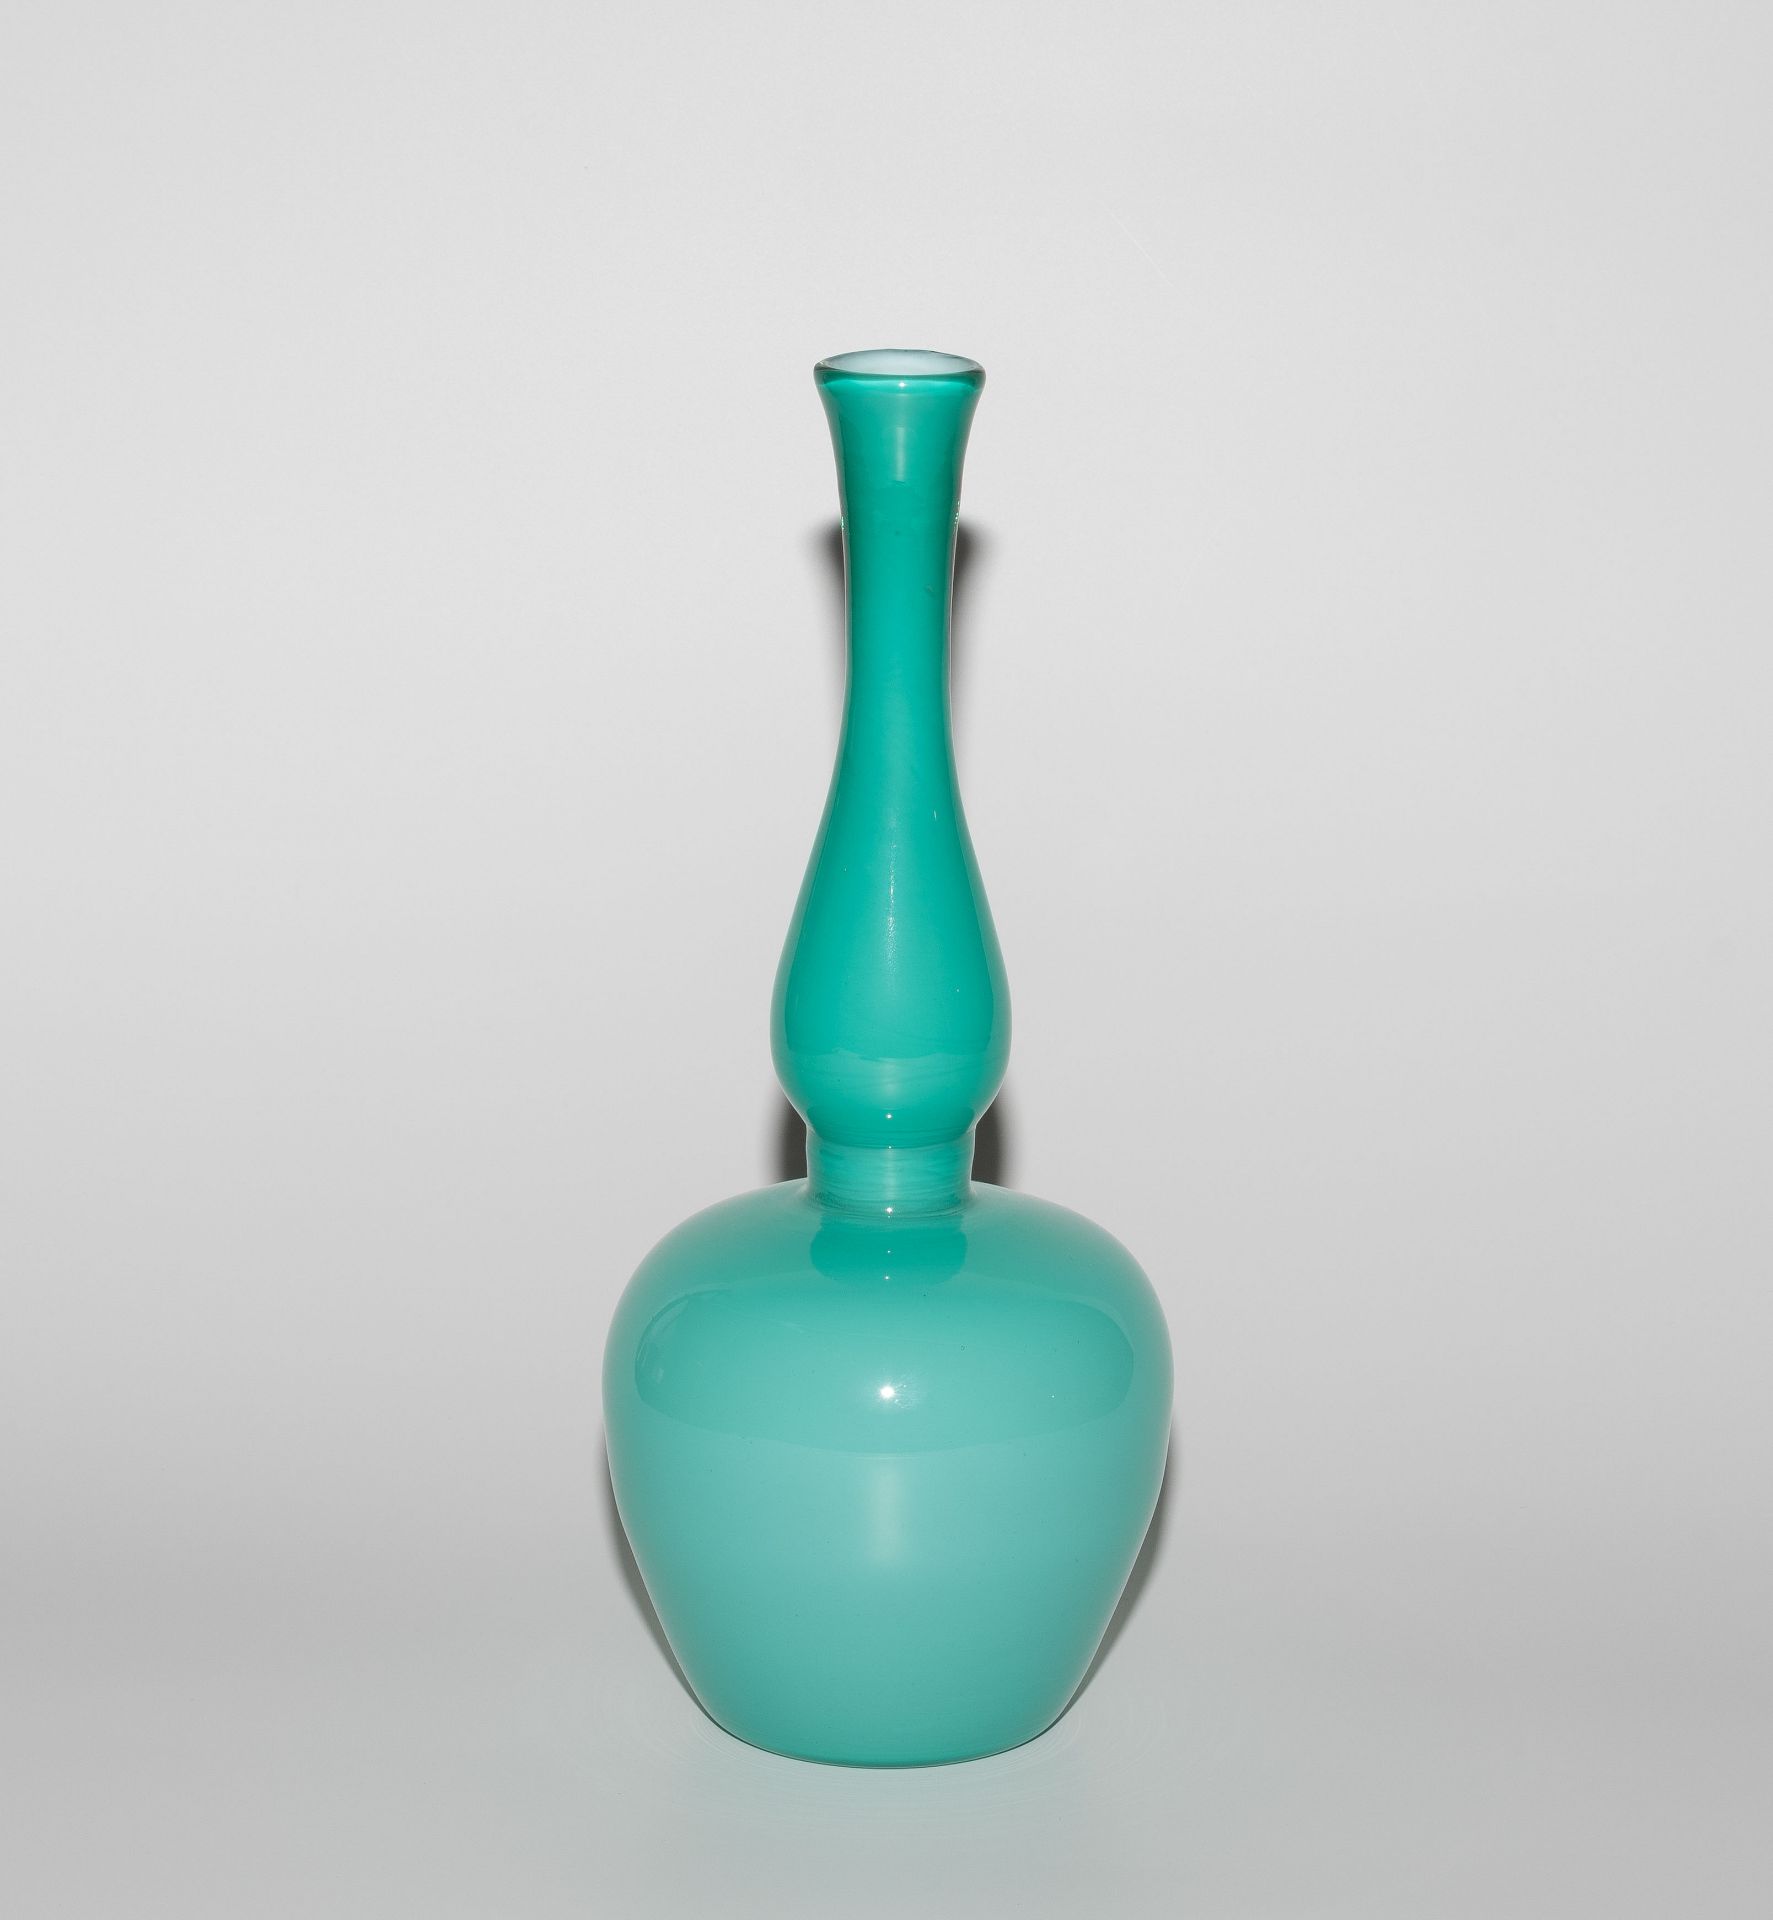 Paolo Venini, Vase "Incamiciato, Modell 3902" - Image 5 of 8